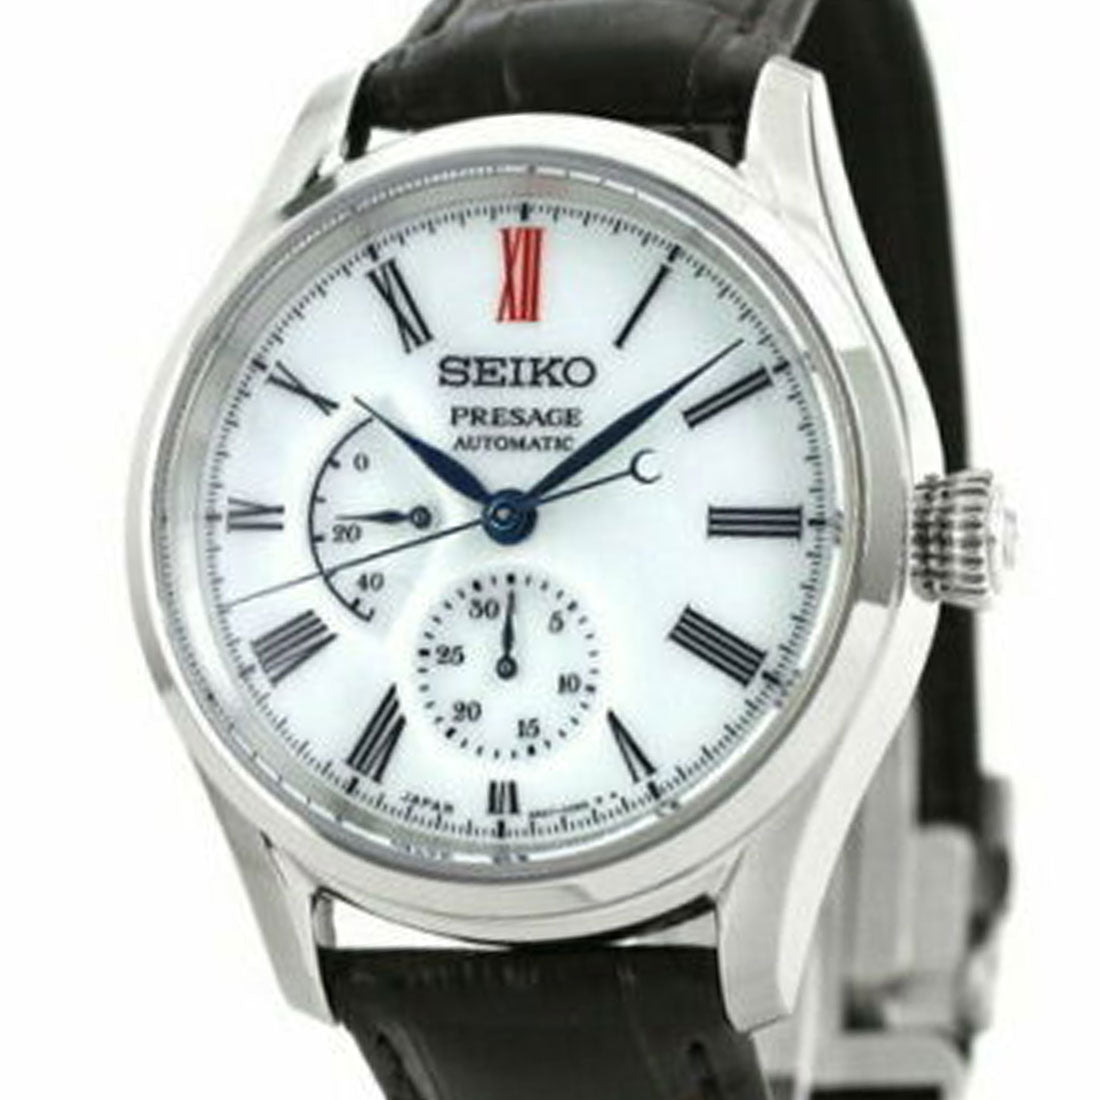 Seiko Presage Arita Porcelain Automatic JDM Watch SARW049 -Seiko